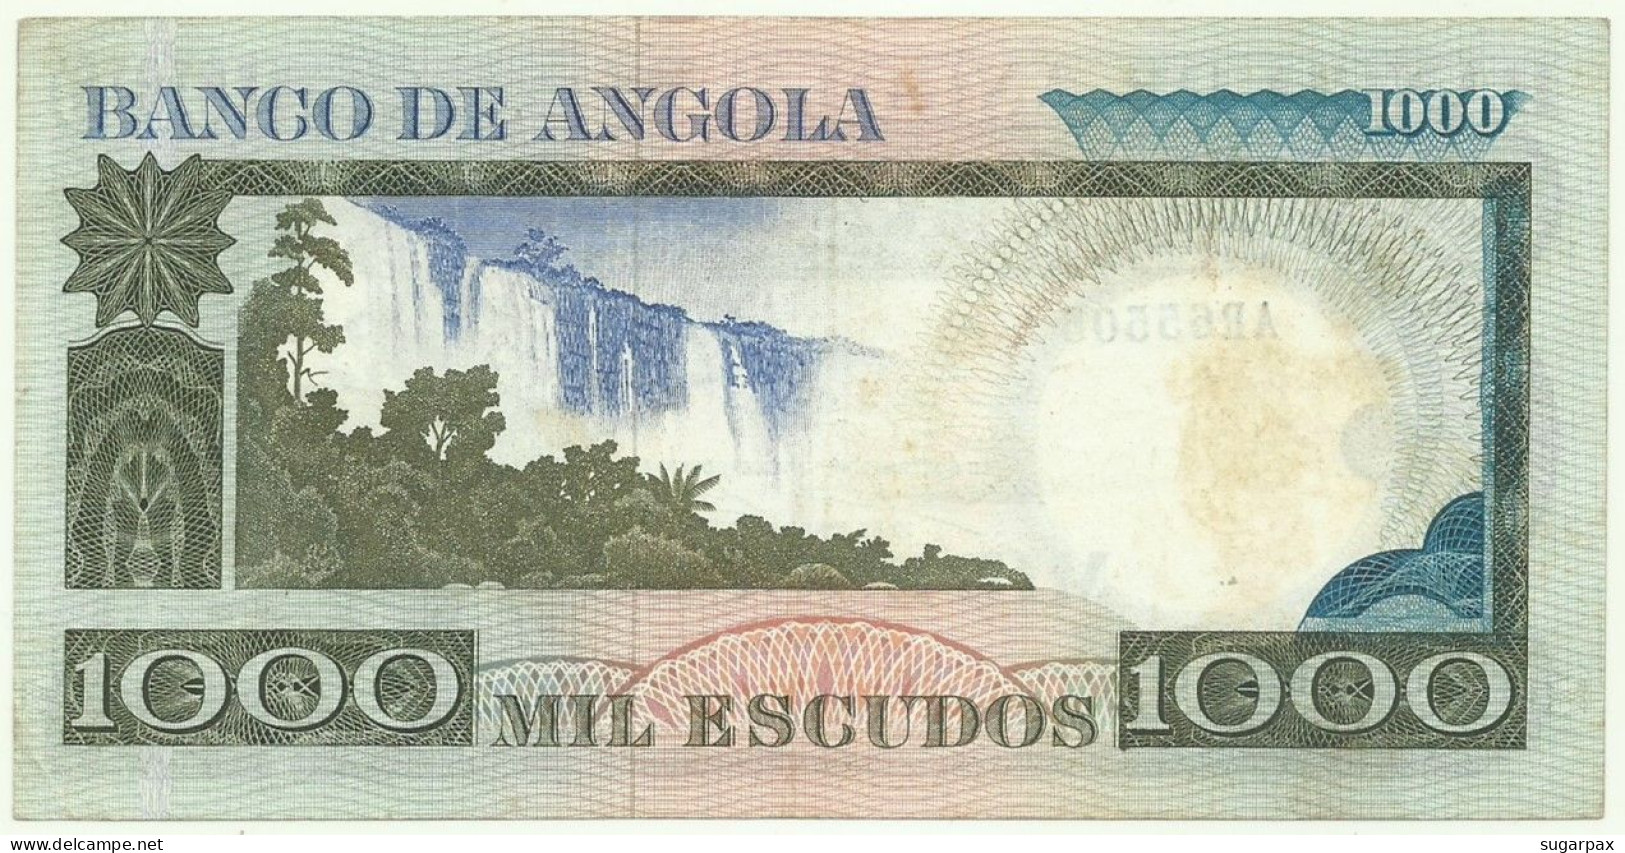 Angola - 1000 Escudos - 10.6.1973 - Pick: 108 - Serie AR - Luiz De Camões - PORTUGAL - 1.000 - Angola